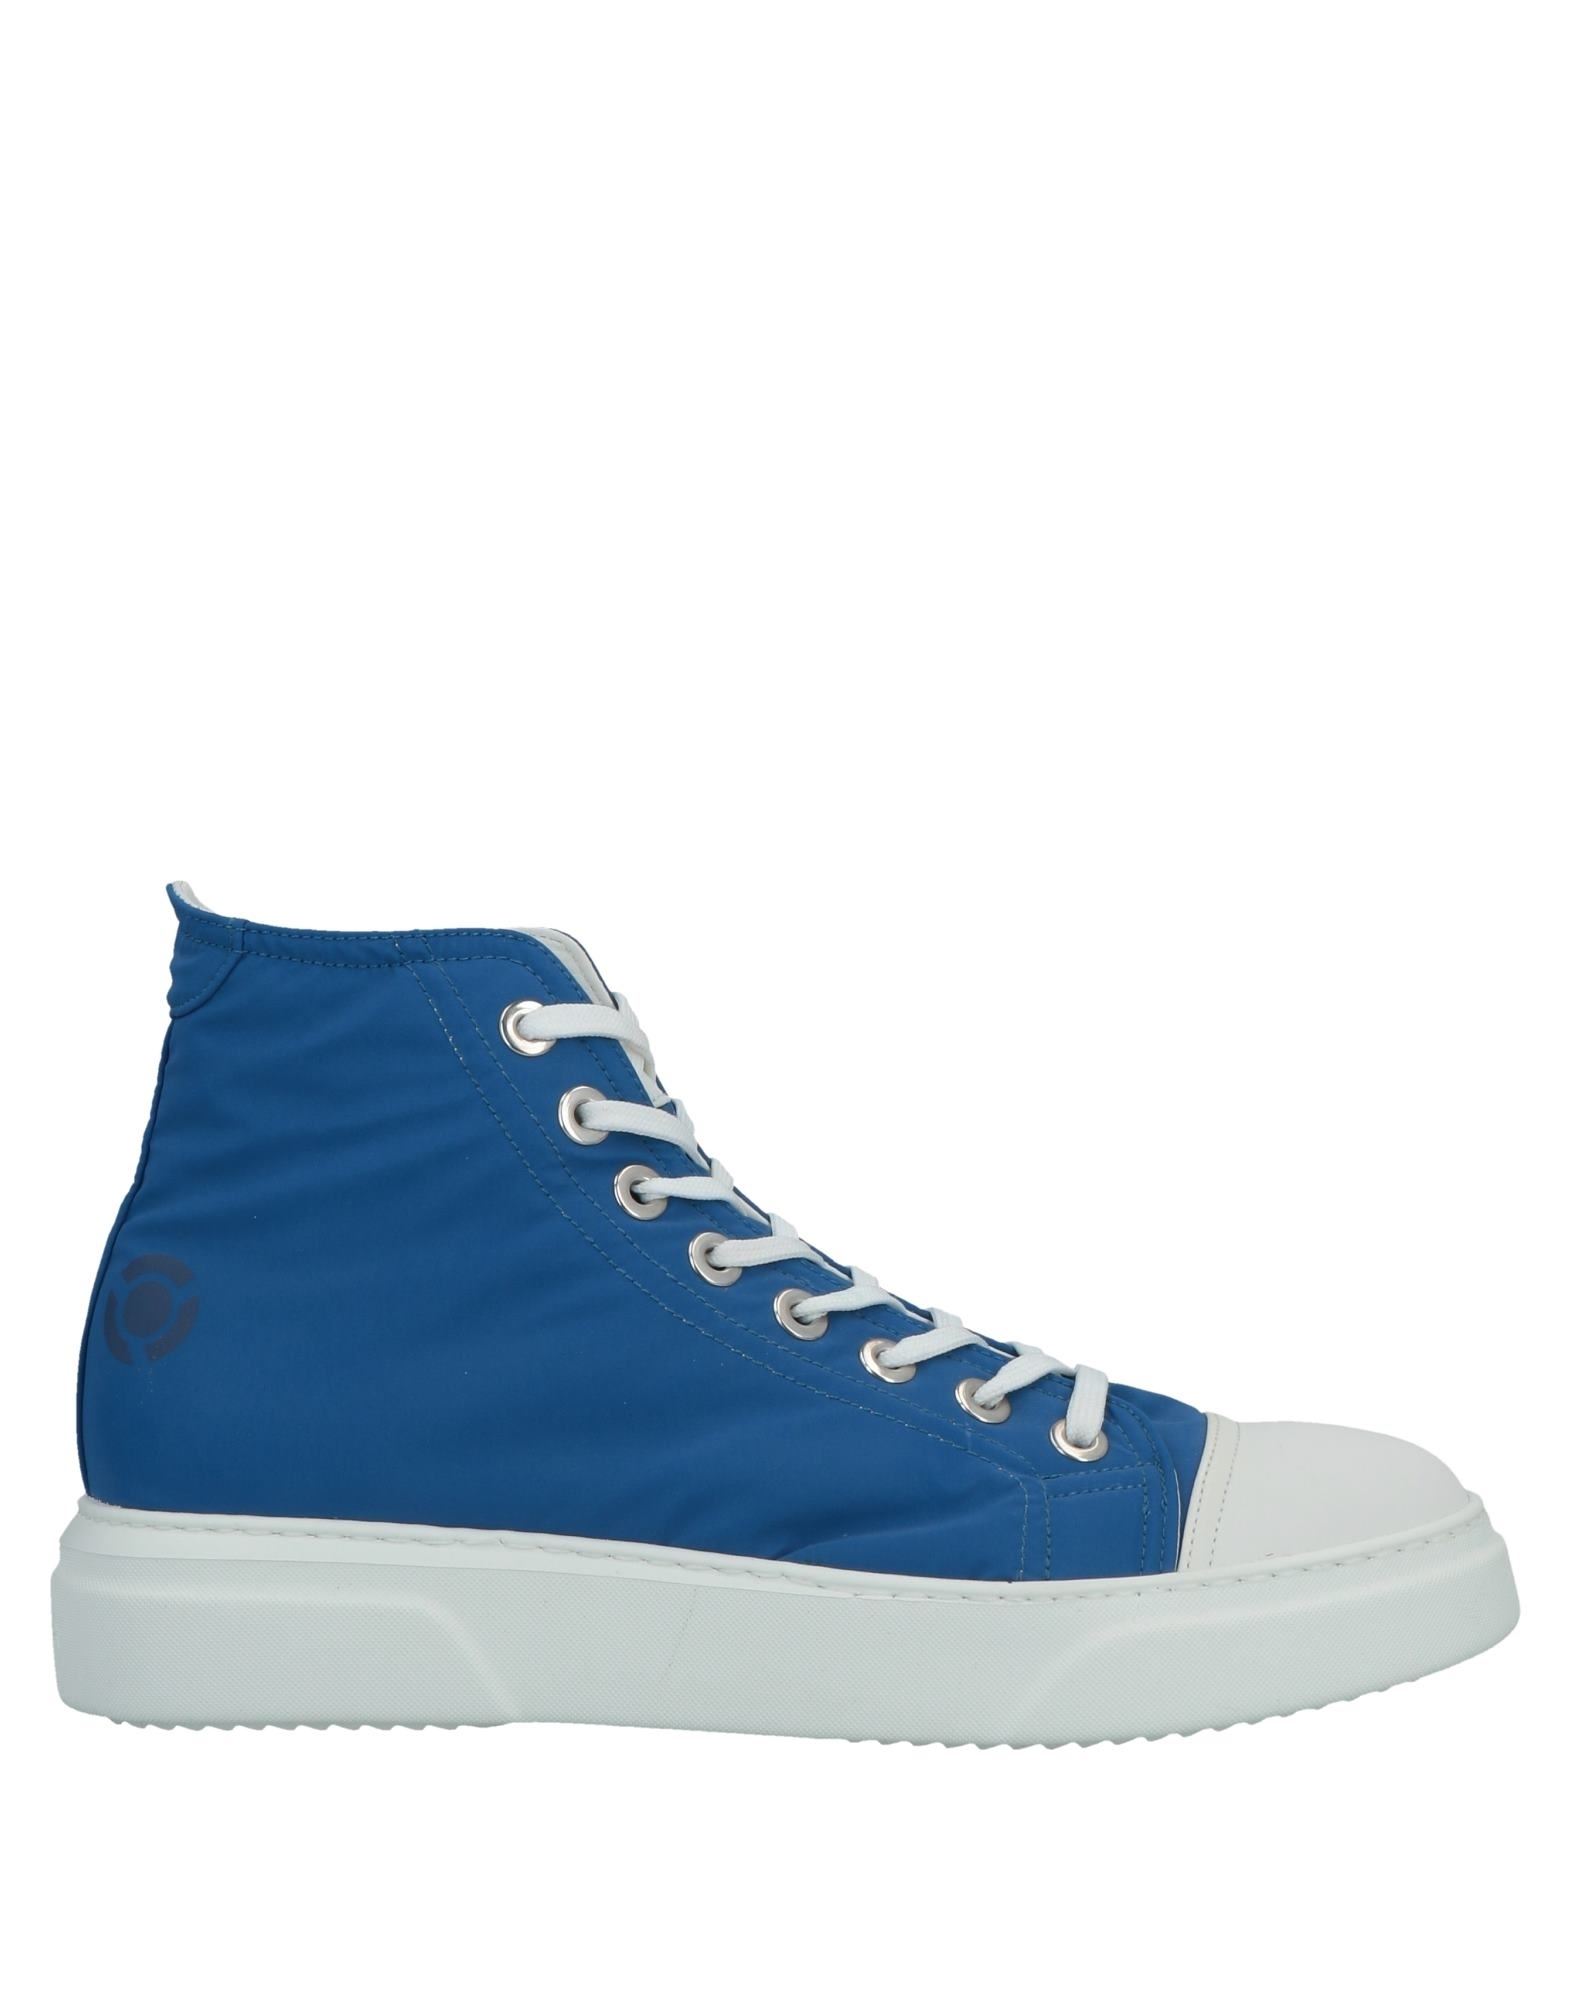 Noova Sneakers In Bright Blue